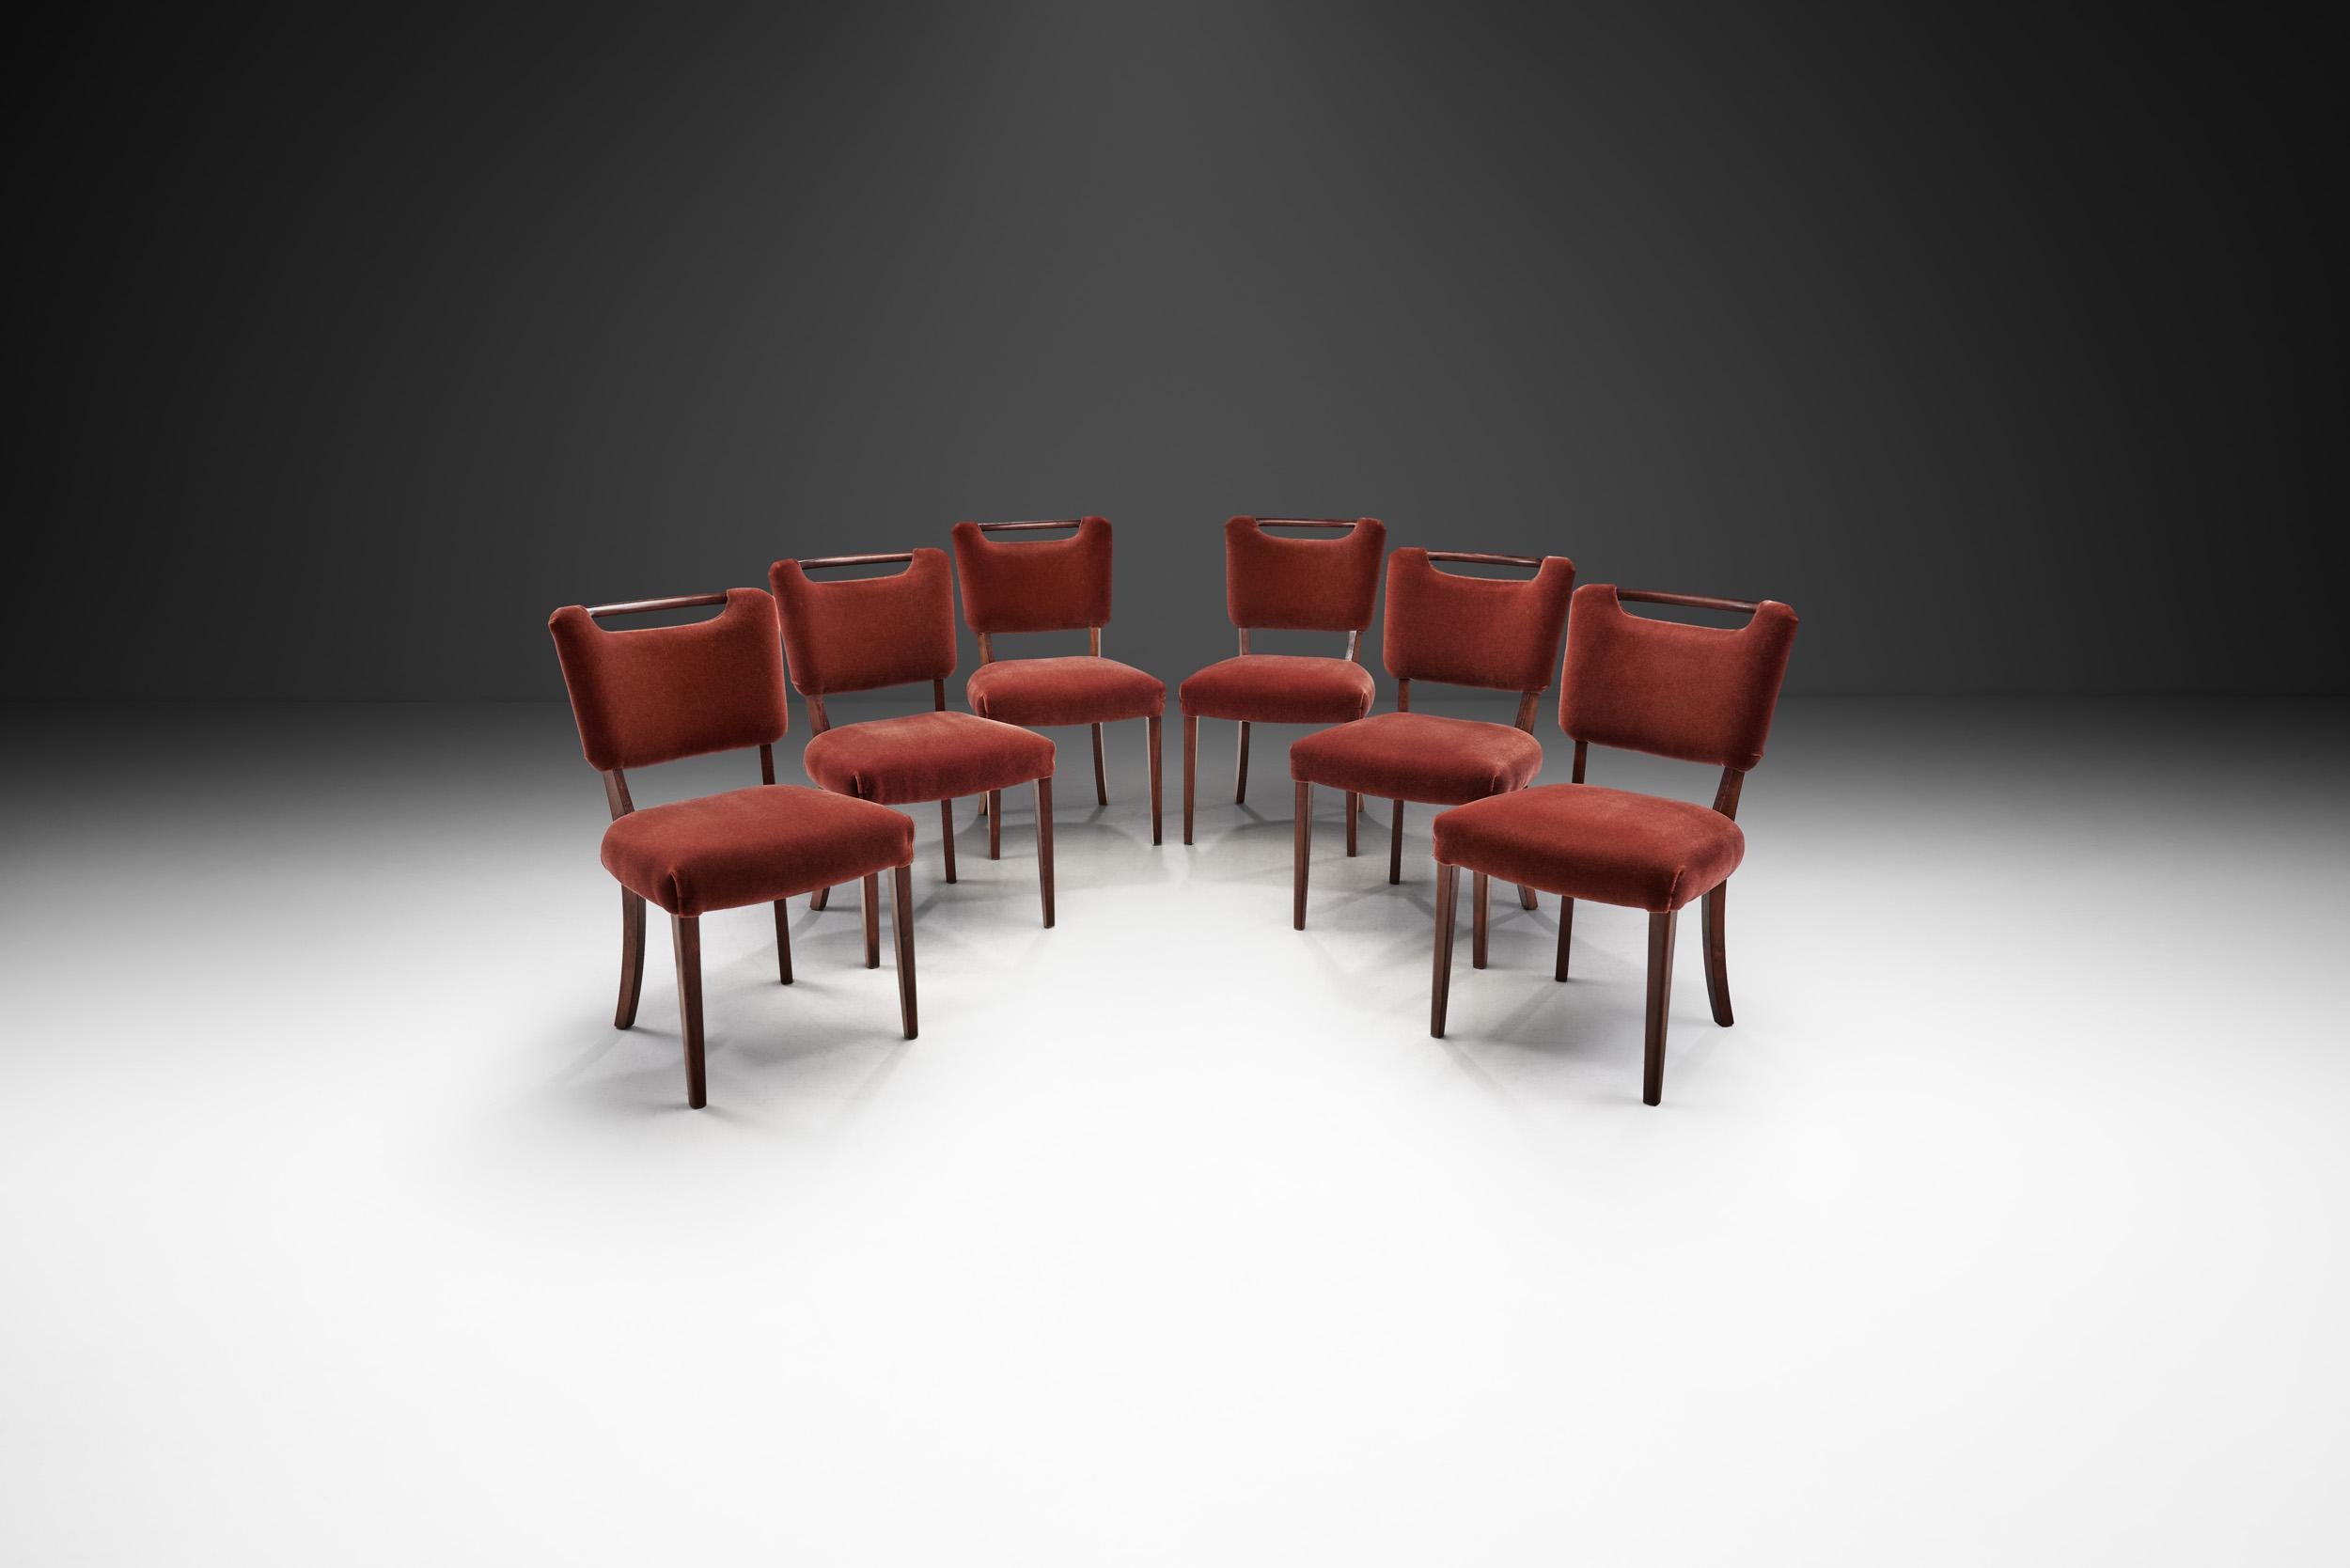 Cet ensemble de six chaises de salle à manger présente une apparence élégante combinée à des éléments de design distinctifs. Pour les ébénistes européens, la création de sièges a constitué une toile vierge sur laquelle ils ont pu laisser libre cours